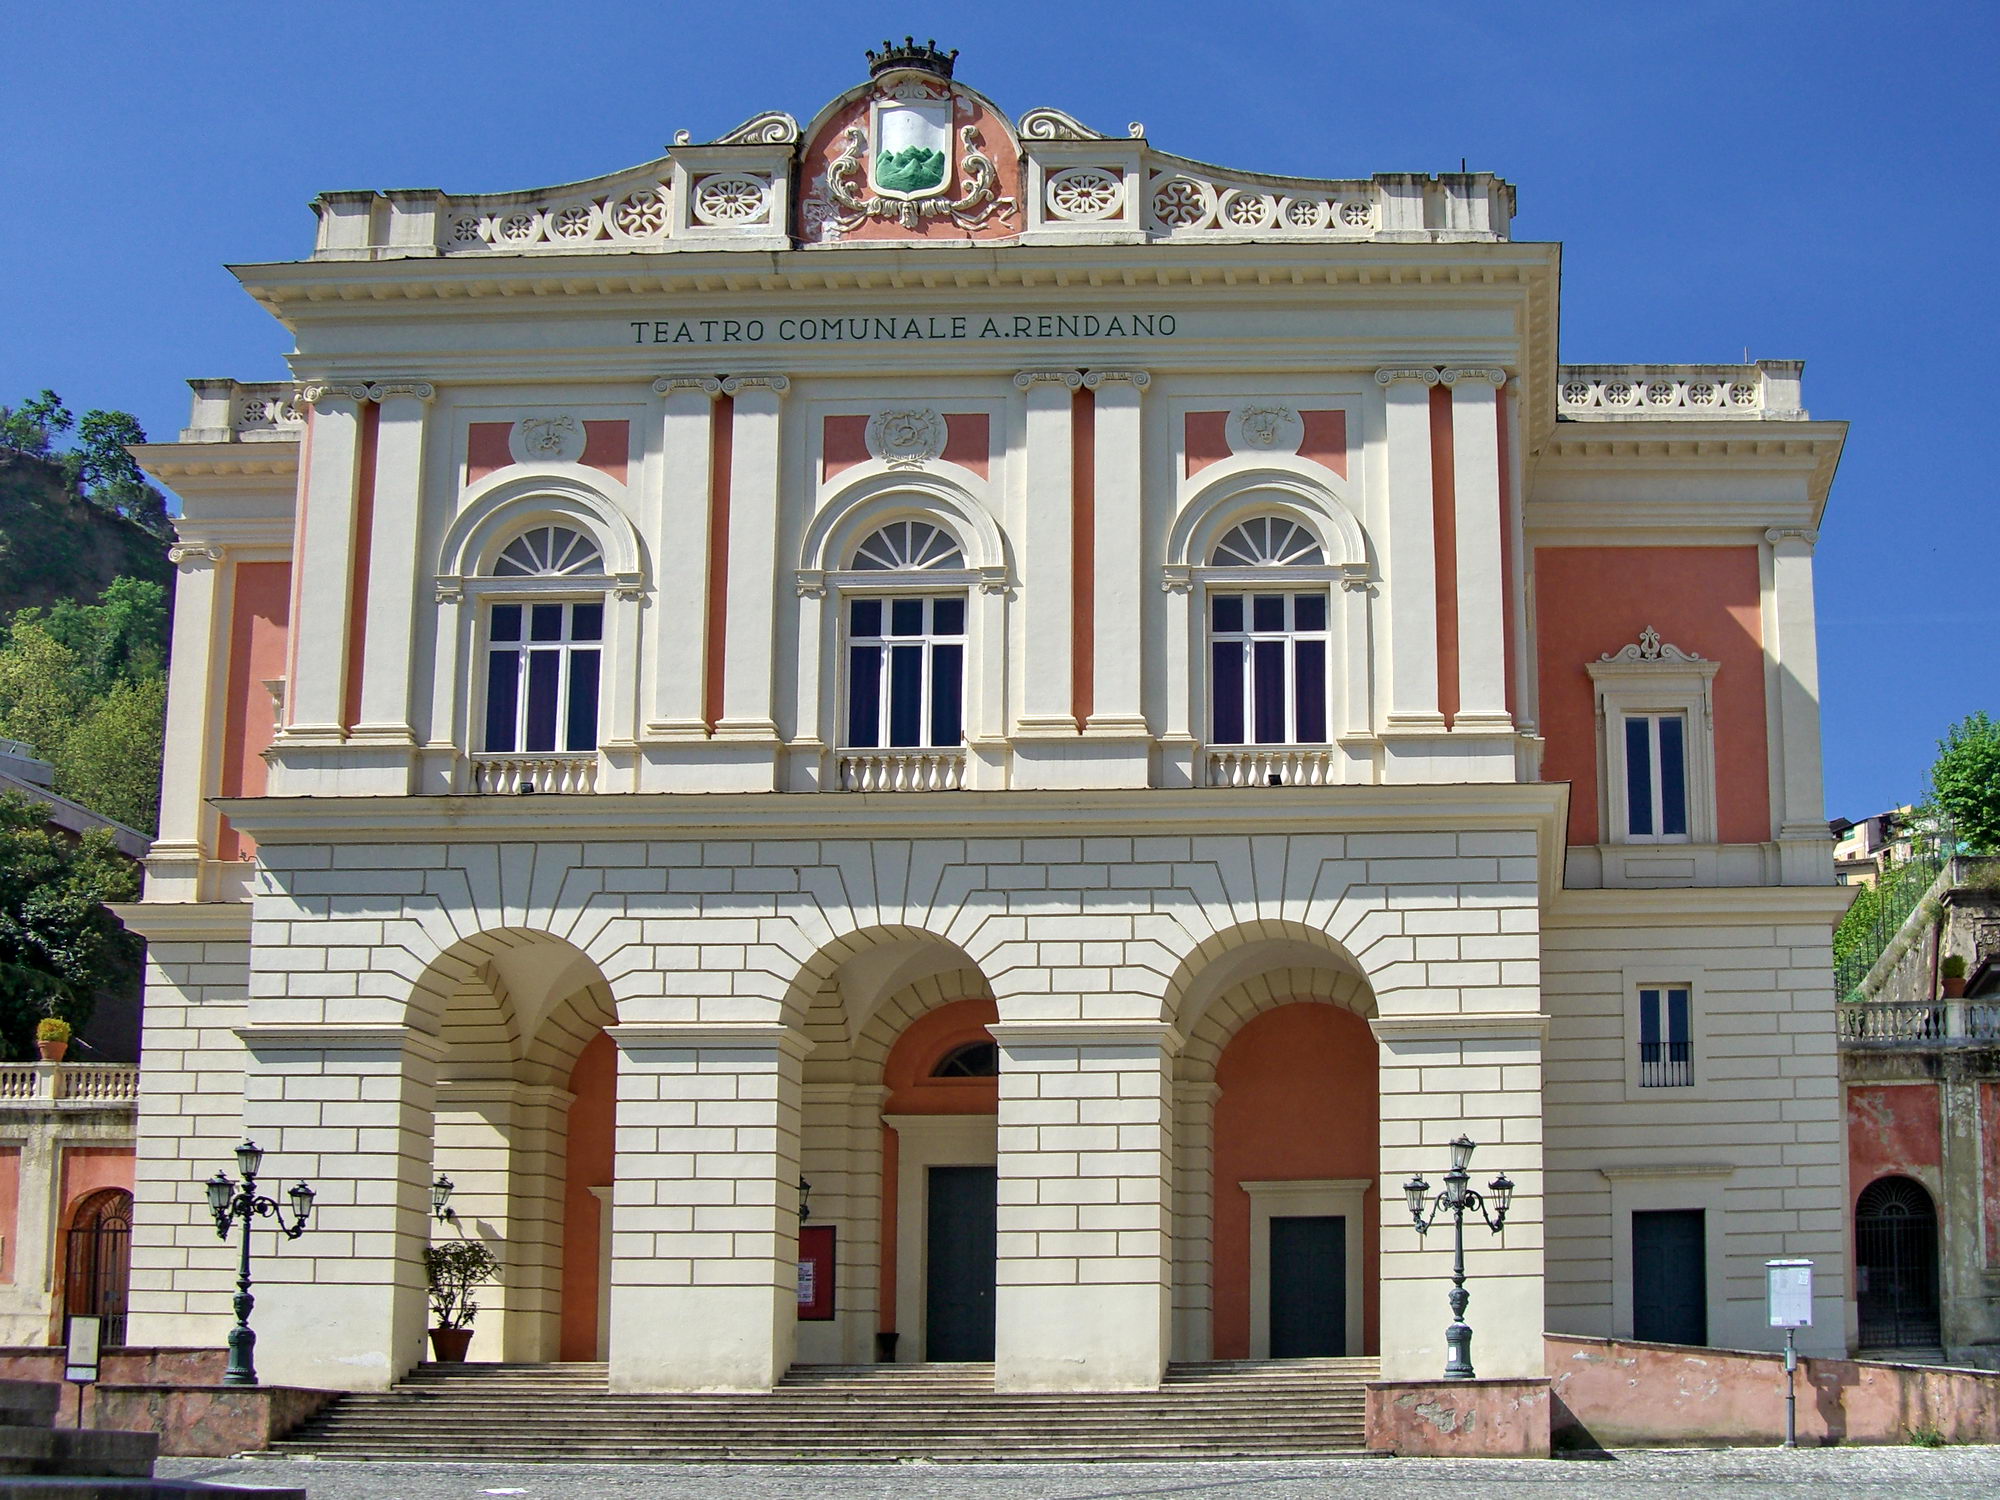 Teatro Comunale "Alfonso Rendano" (teatro, comunale) - Cosenza (CS)  (1887)